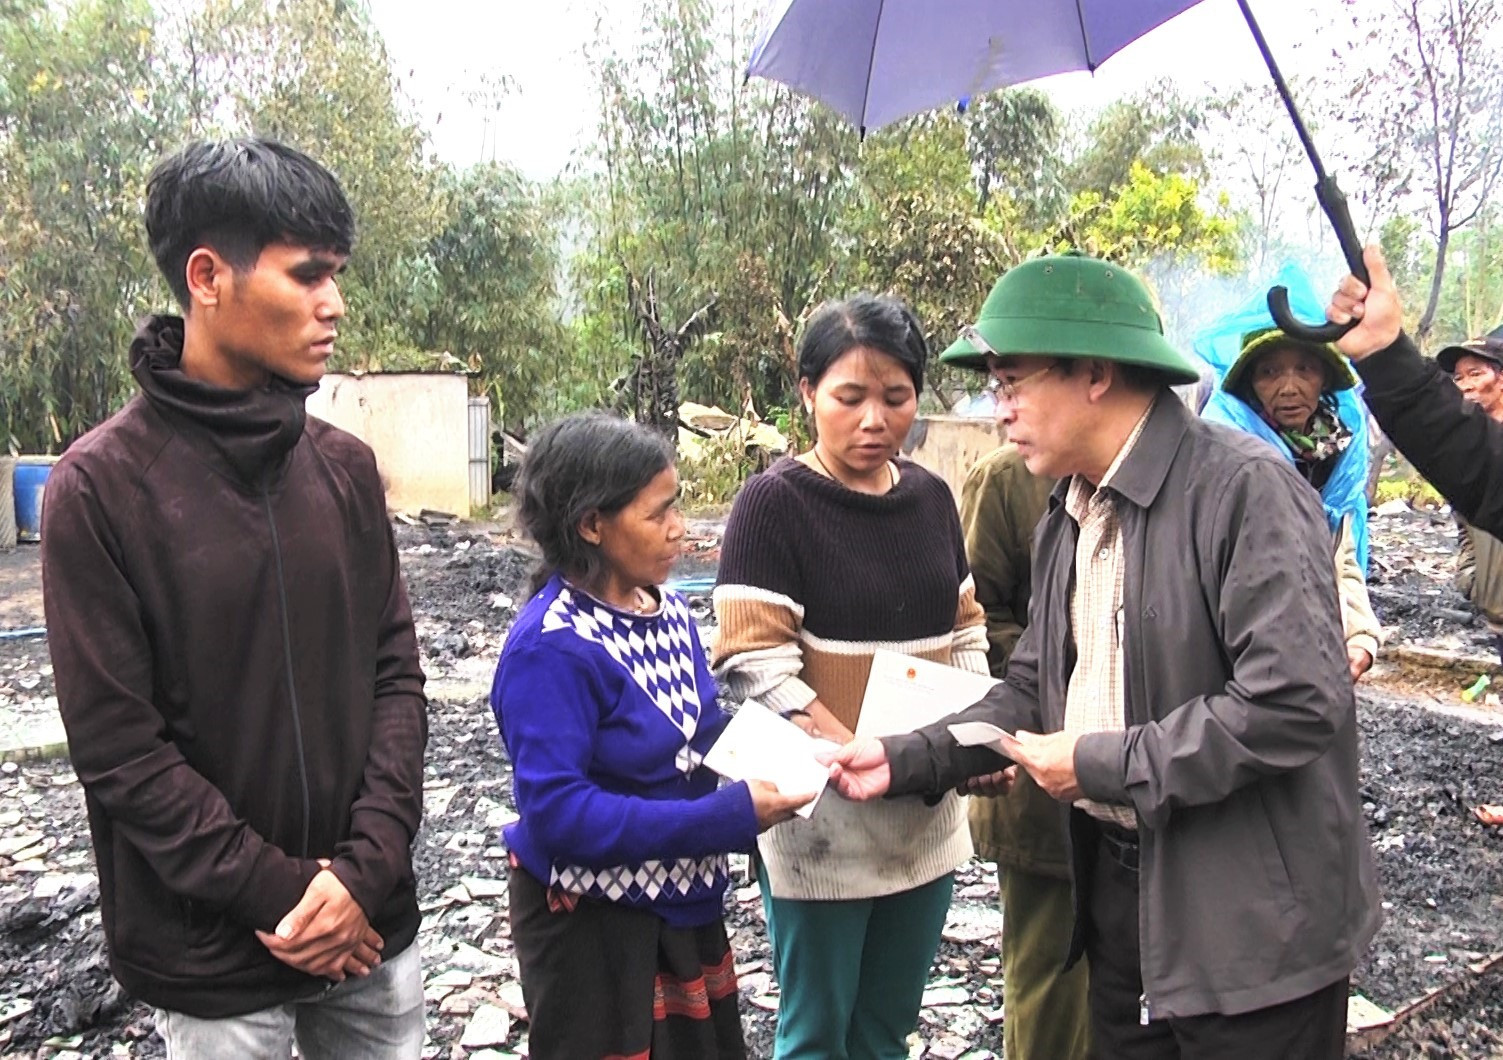 Phó Chủ tịch UBND tỉnh Trần Anh Tuấn trao quà động viên các hộ dân bị cháy nhà. Ảnh: A.N